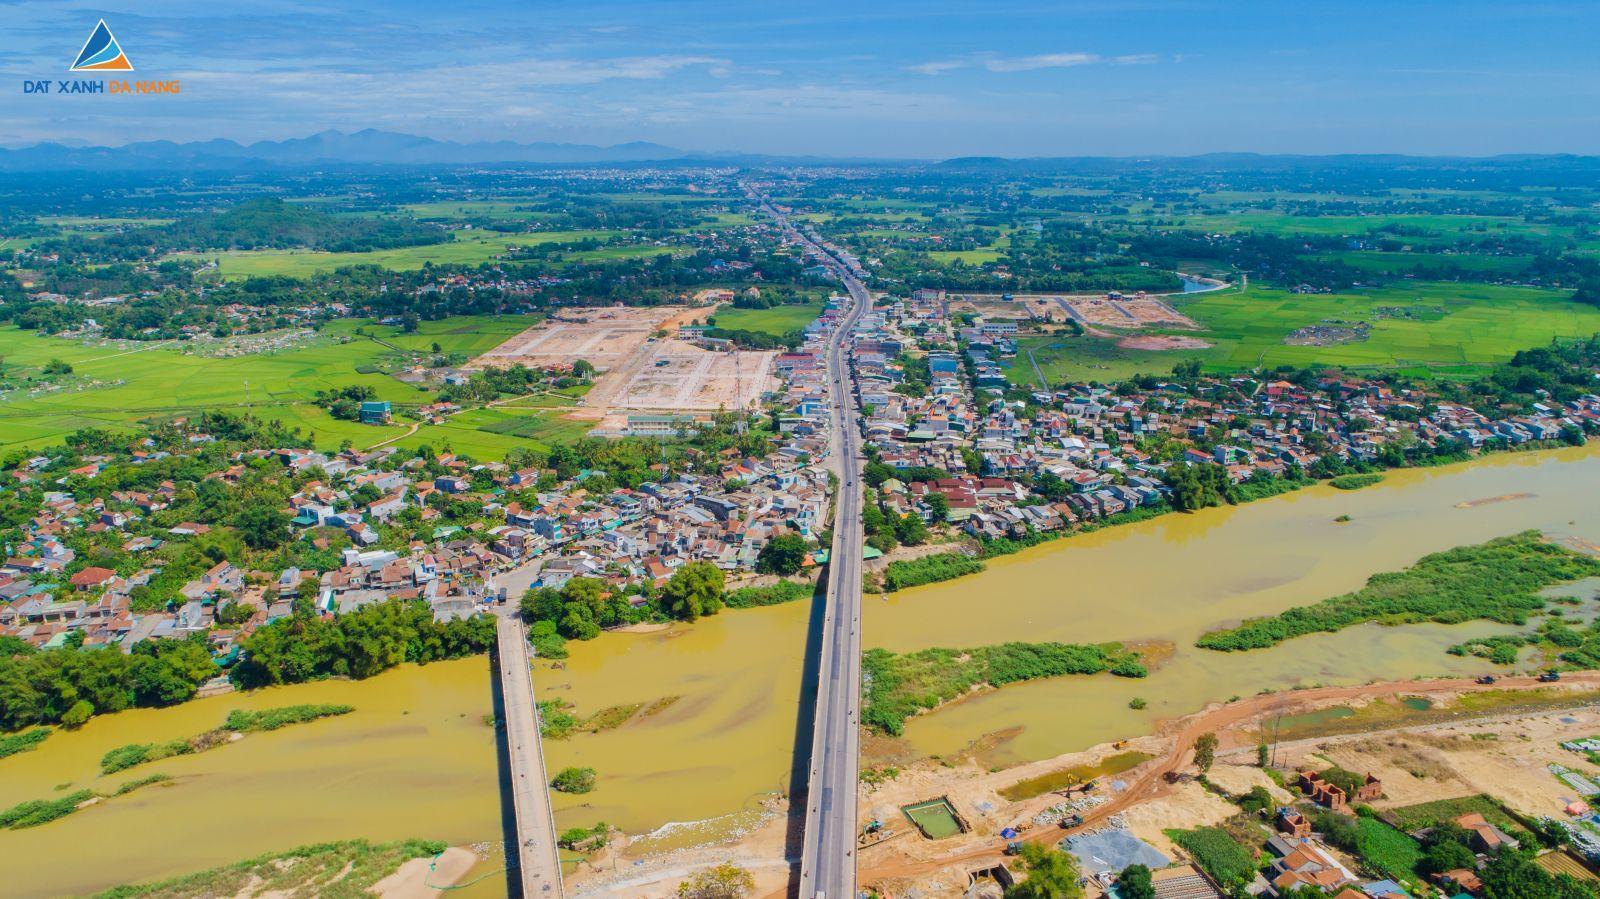 [GÓC CẬP NHẬT] DỰ ÁN PALM VILLAGE THÁNG 08/2019 - Viet Nam Smart City